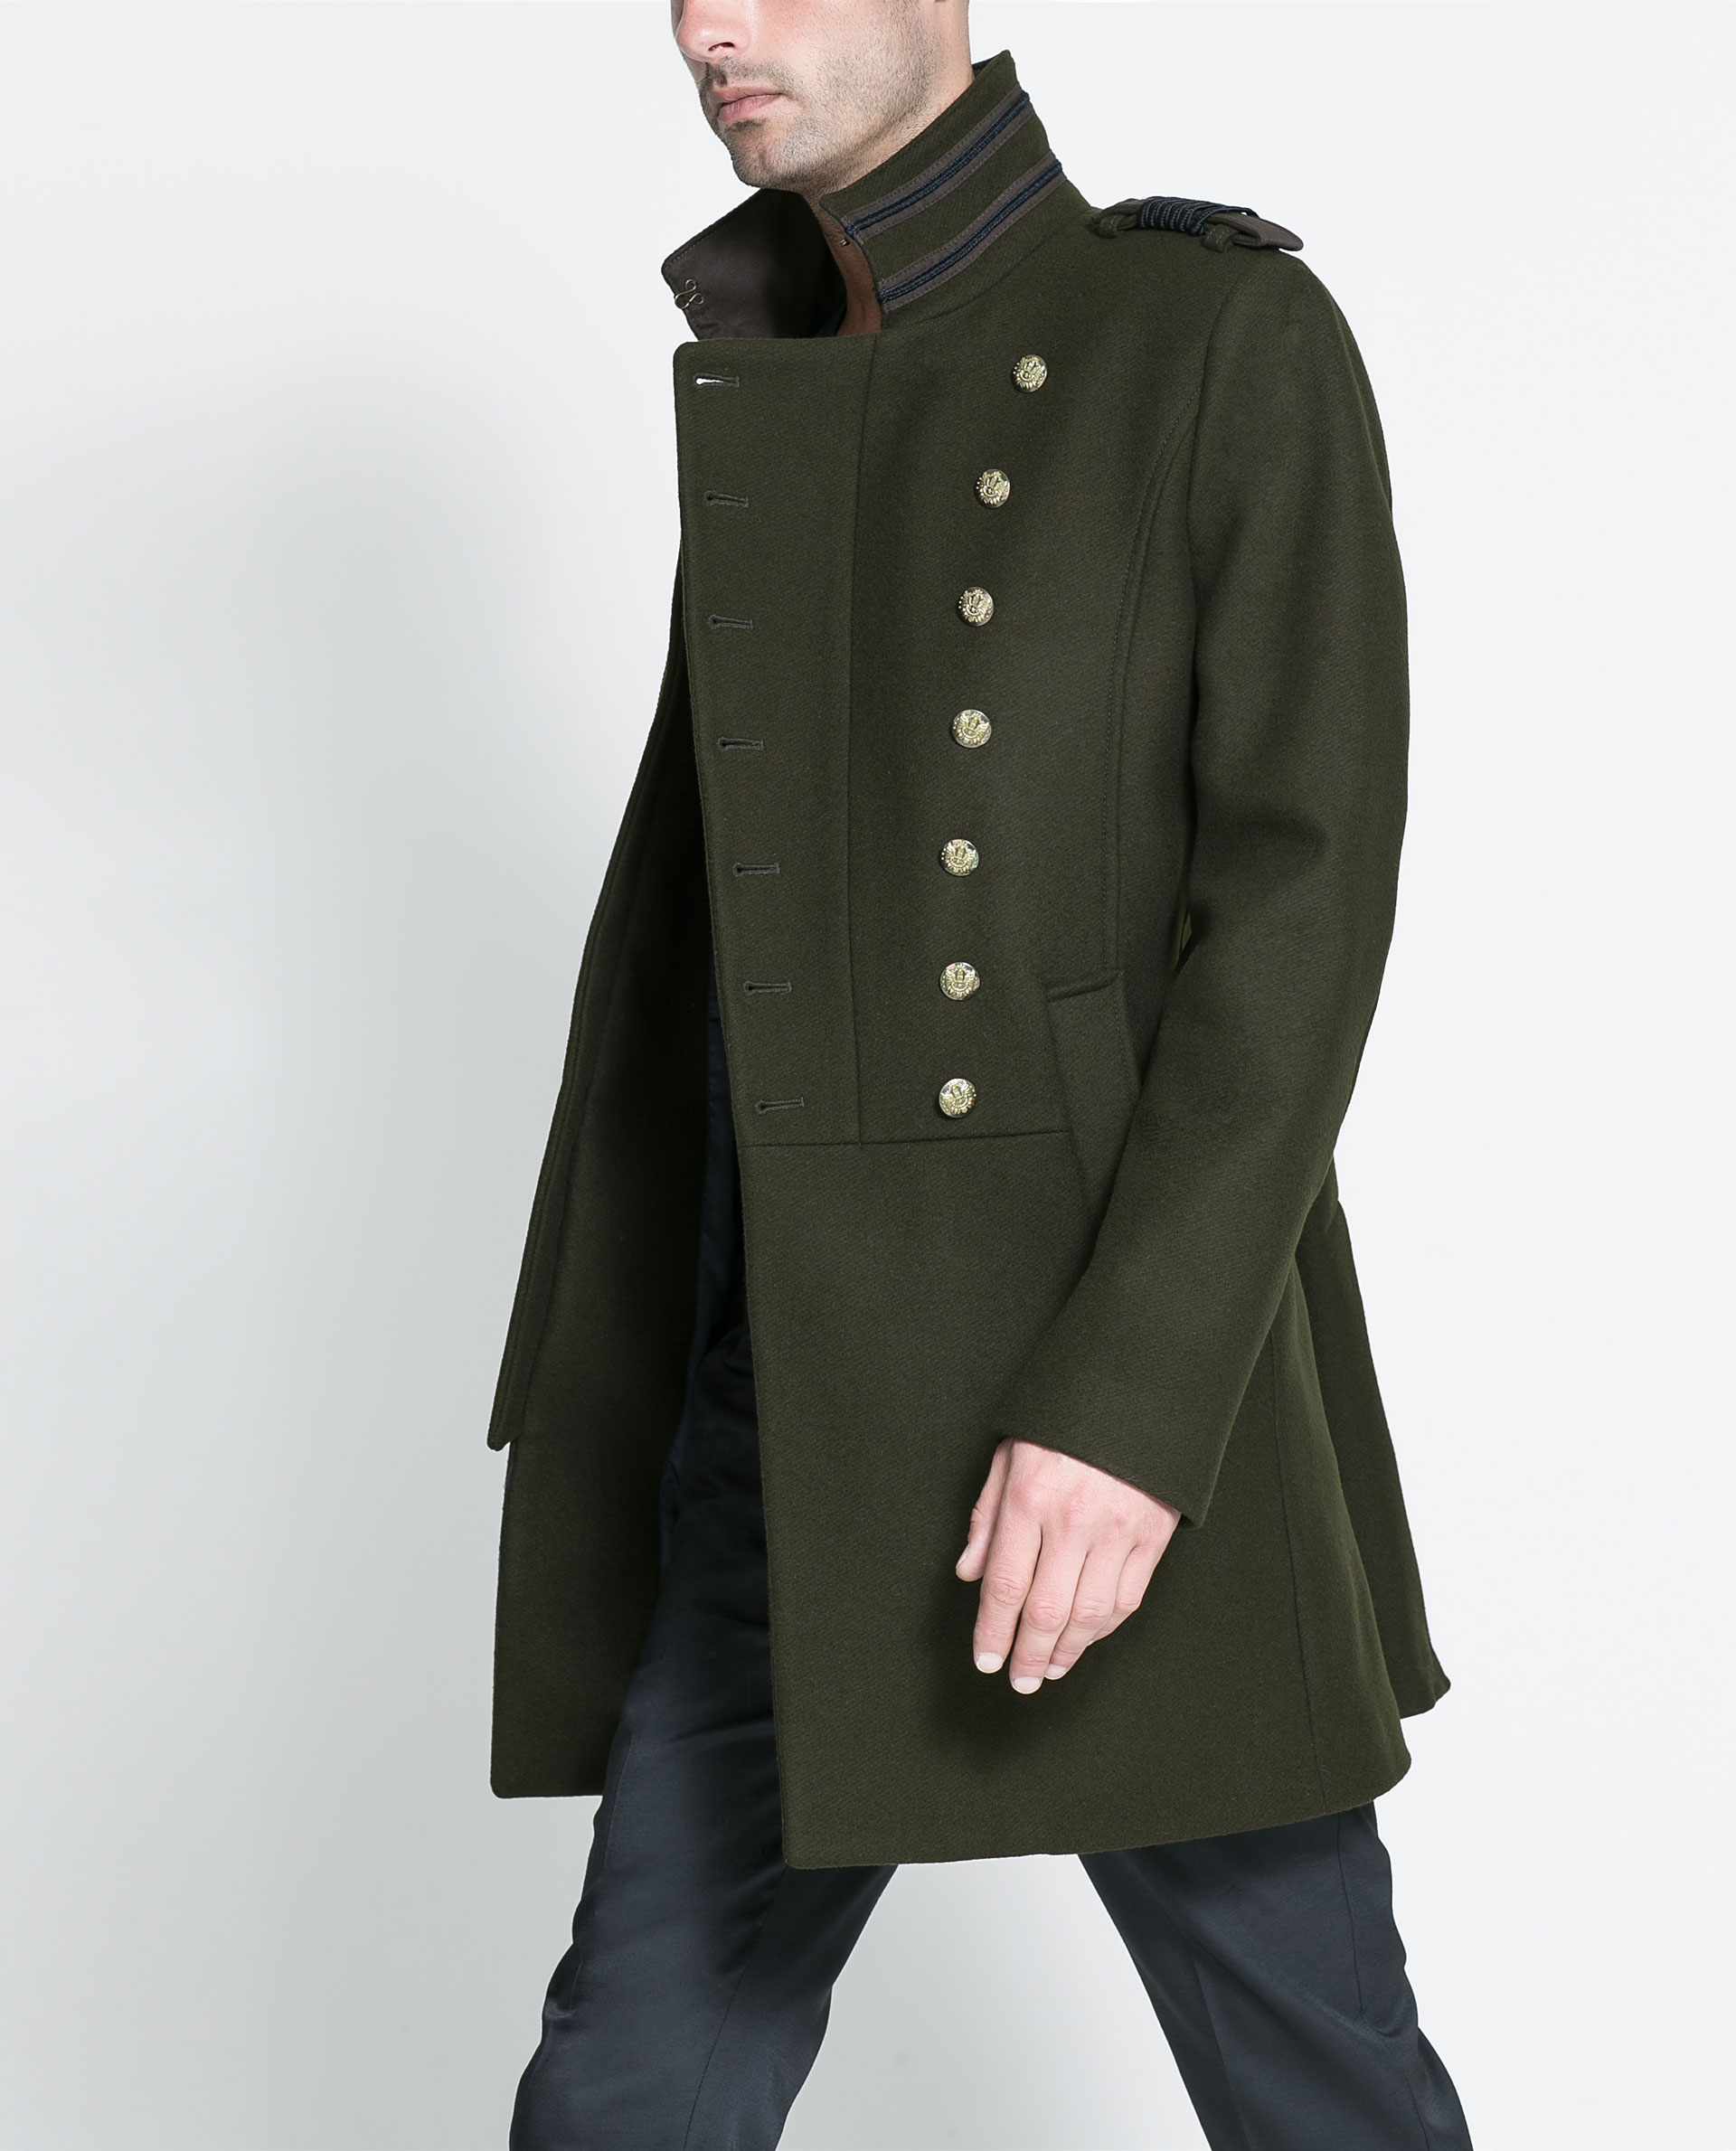 Khaki Military Coat - Coat Nj